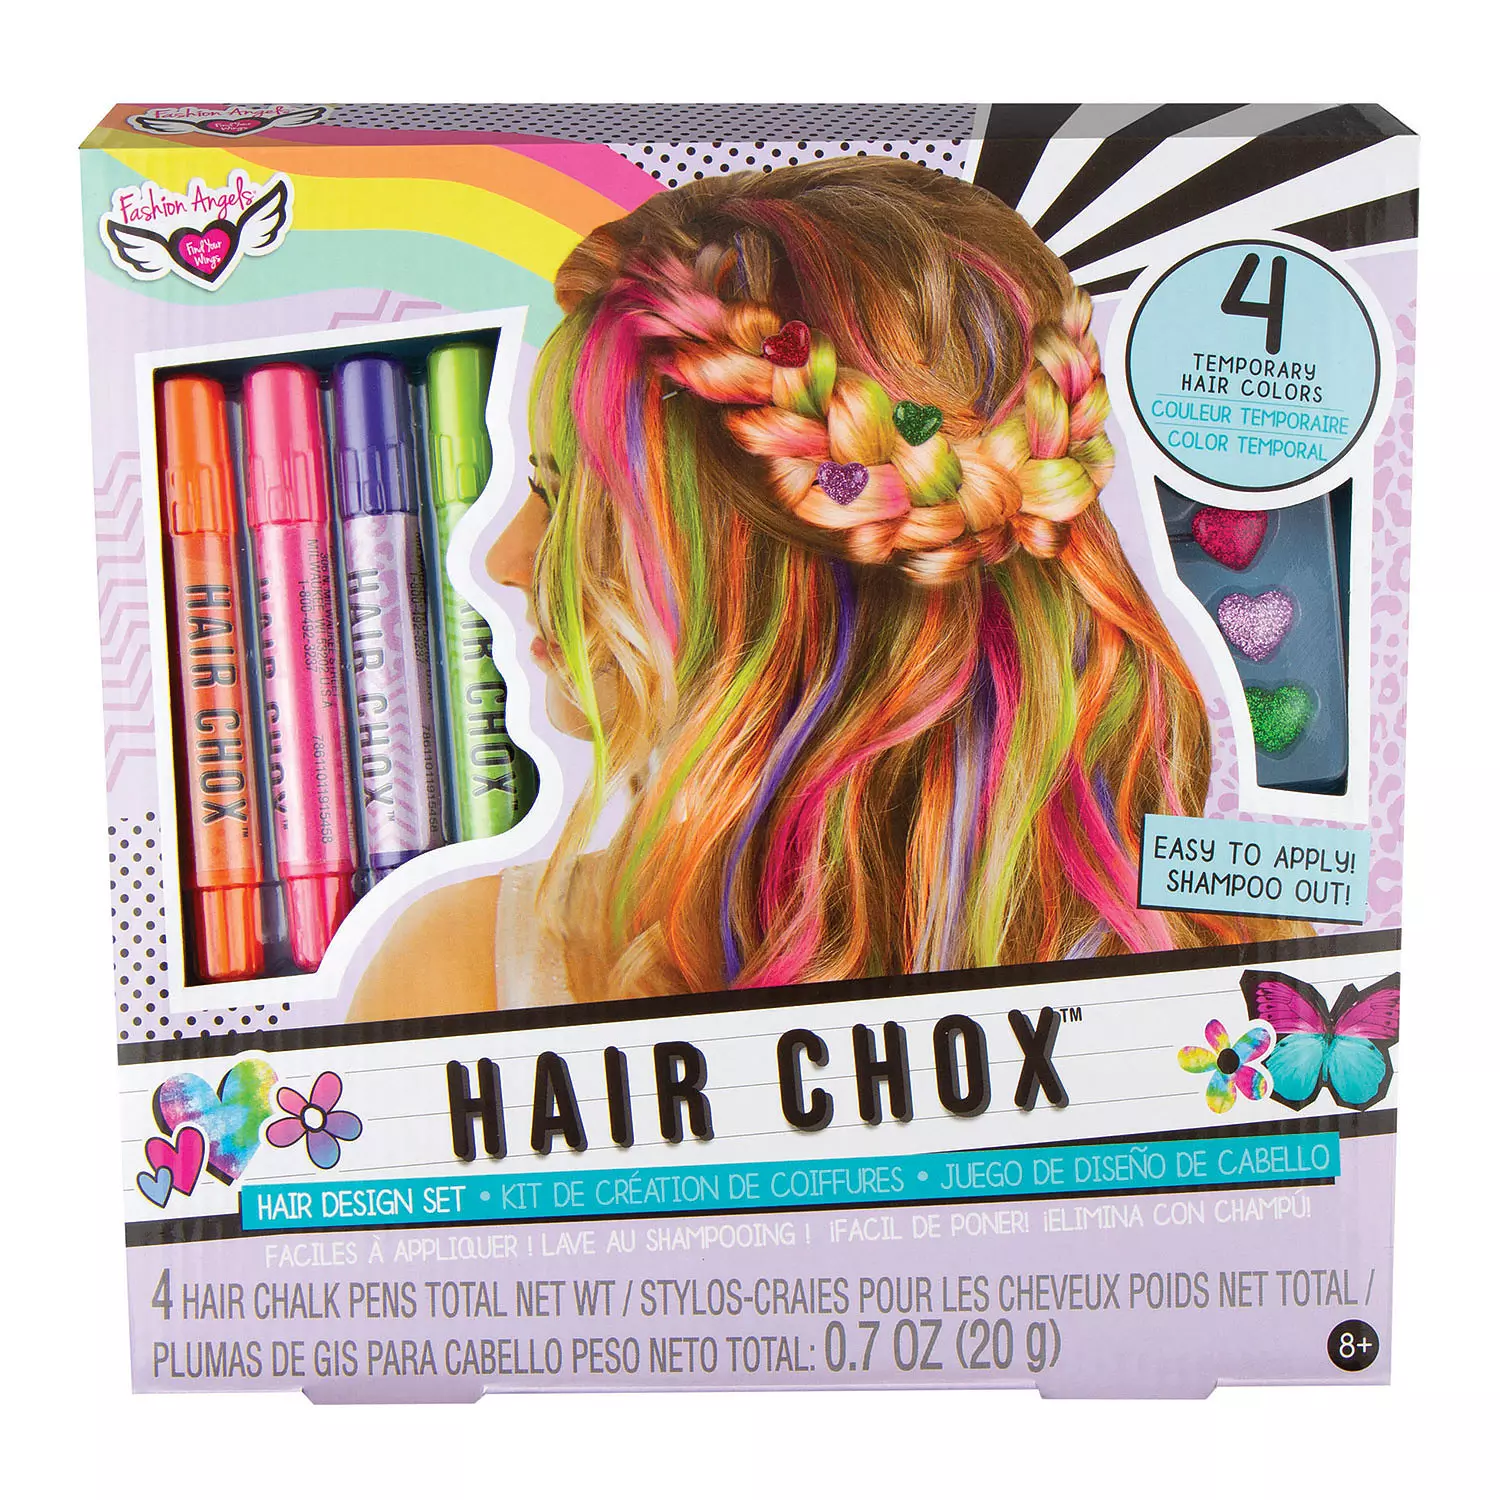 Fashion Angels - Hair Chox, tie-dye kit de création de coiffures